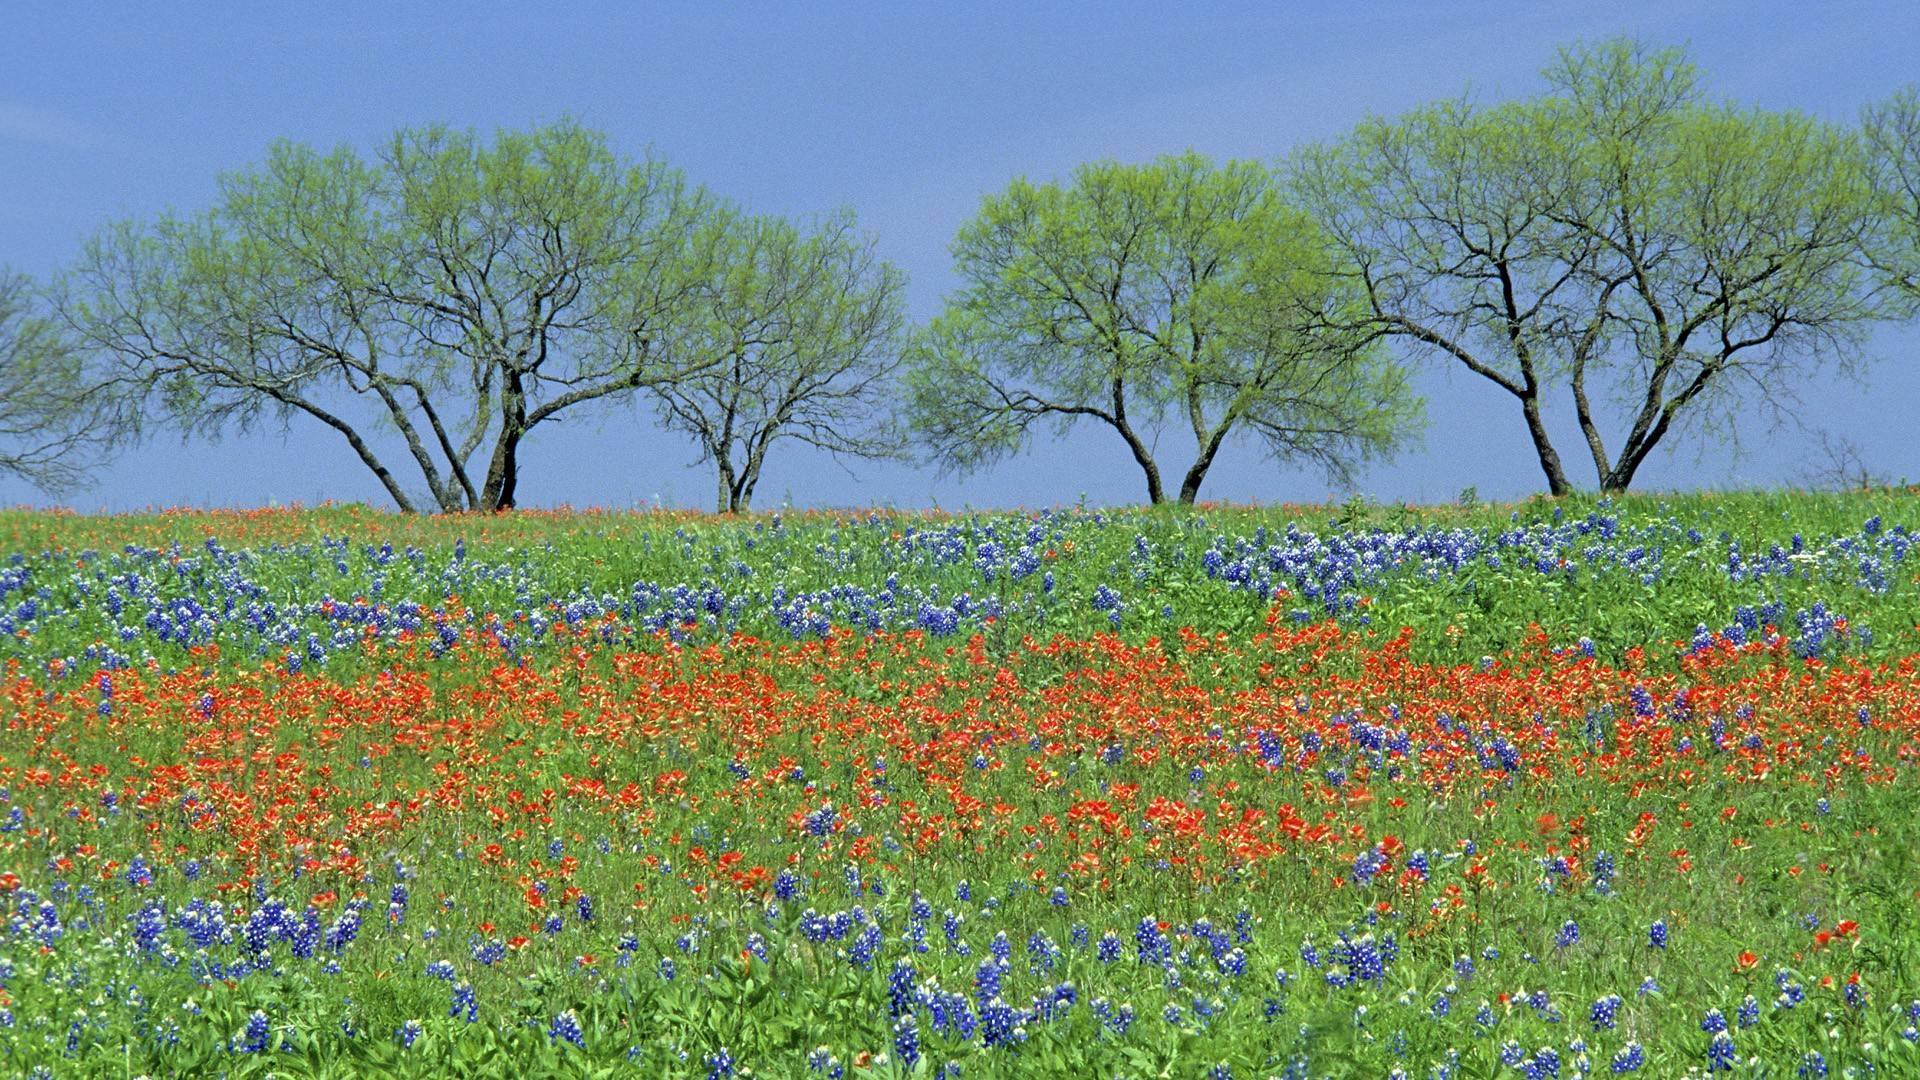 Flowers fields Texas parks wildflowers Bluebonnet wallpaper